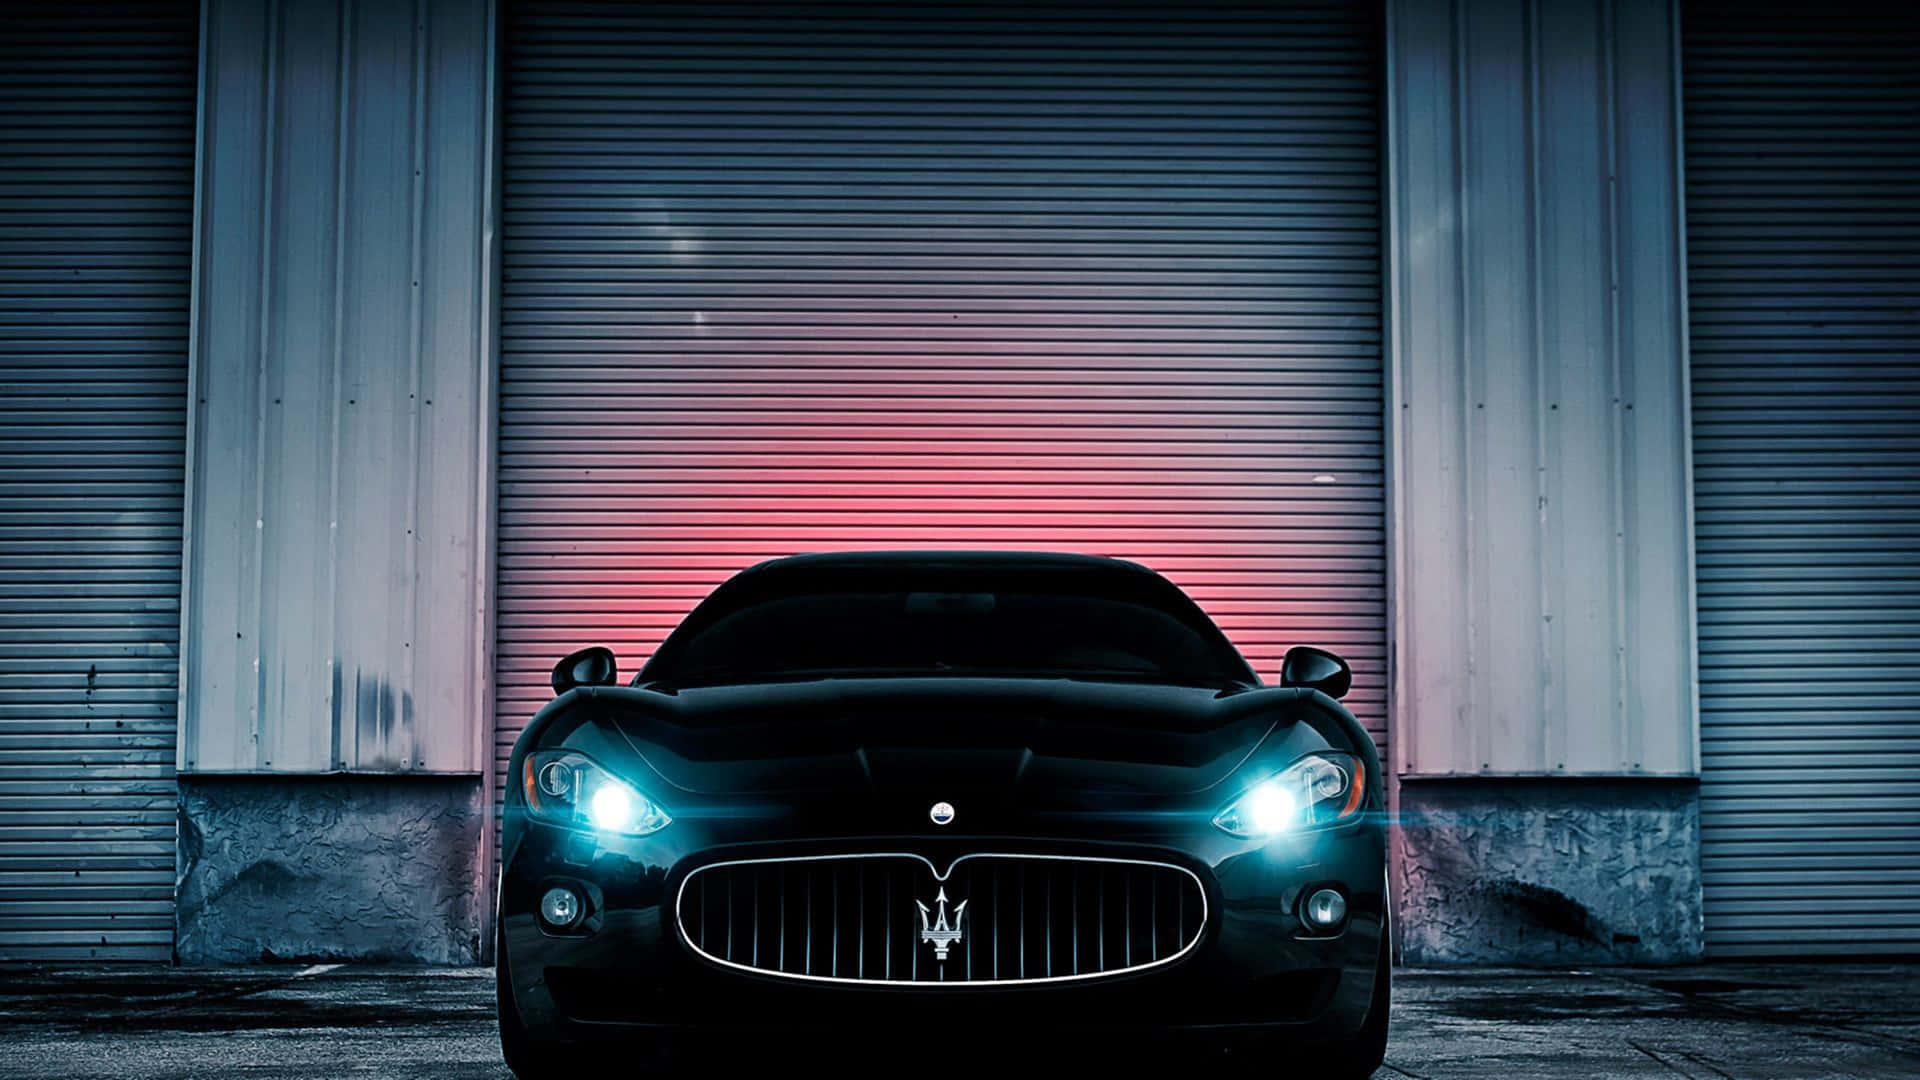 Ensvart Maserati Parkerad Framför En Garage Wallpaper